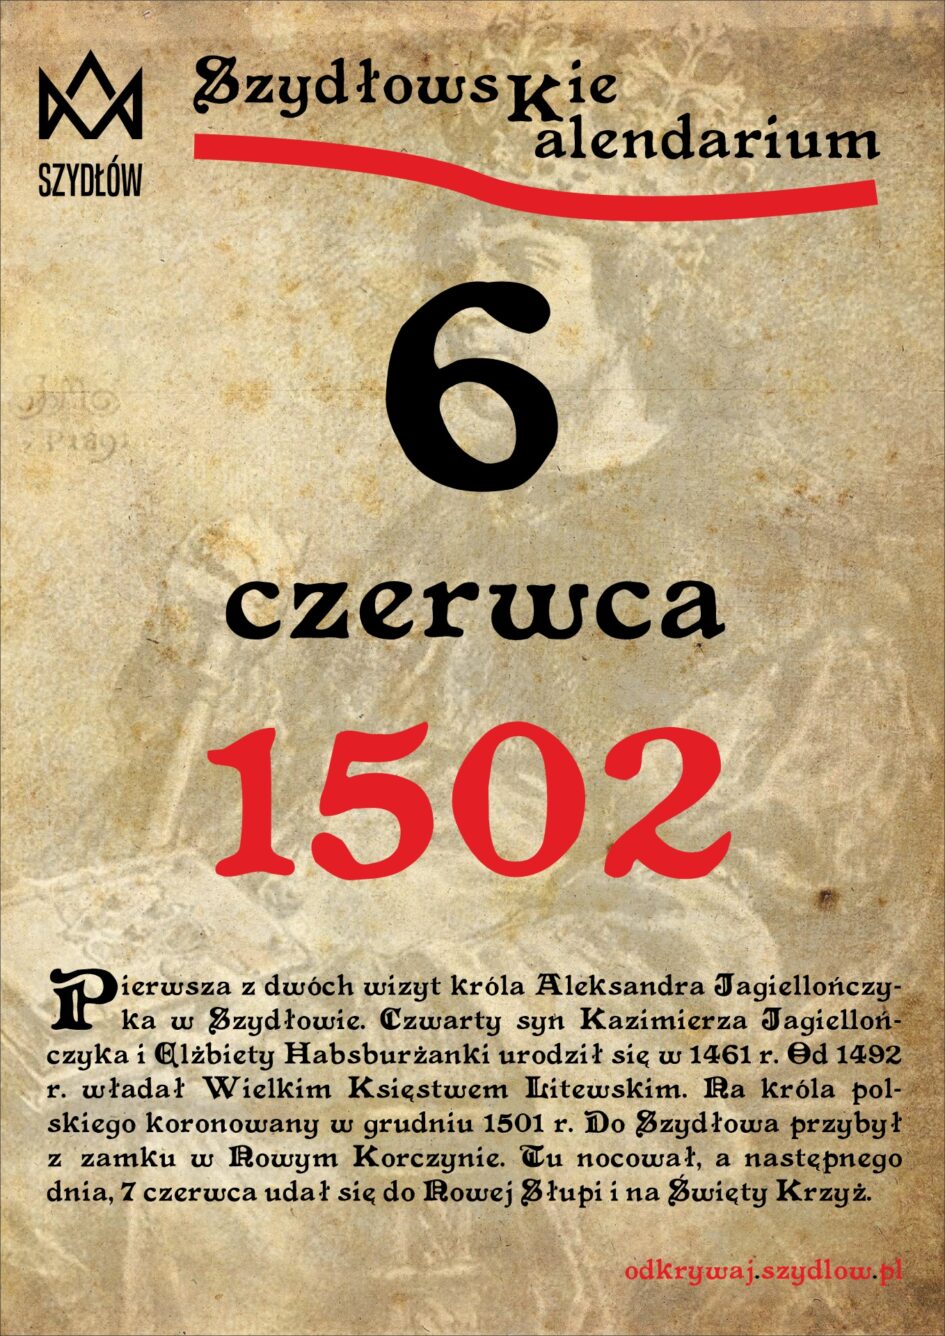 Aleksander Jagiellończyk 6 czerwca 1502 w Szydłowie